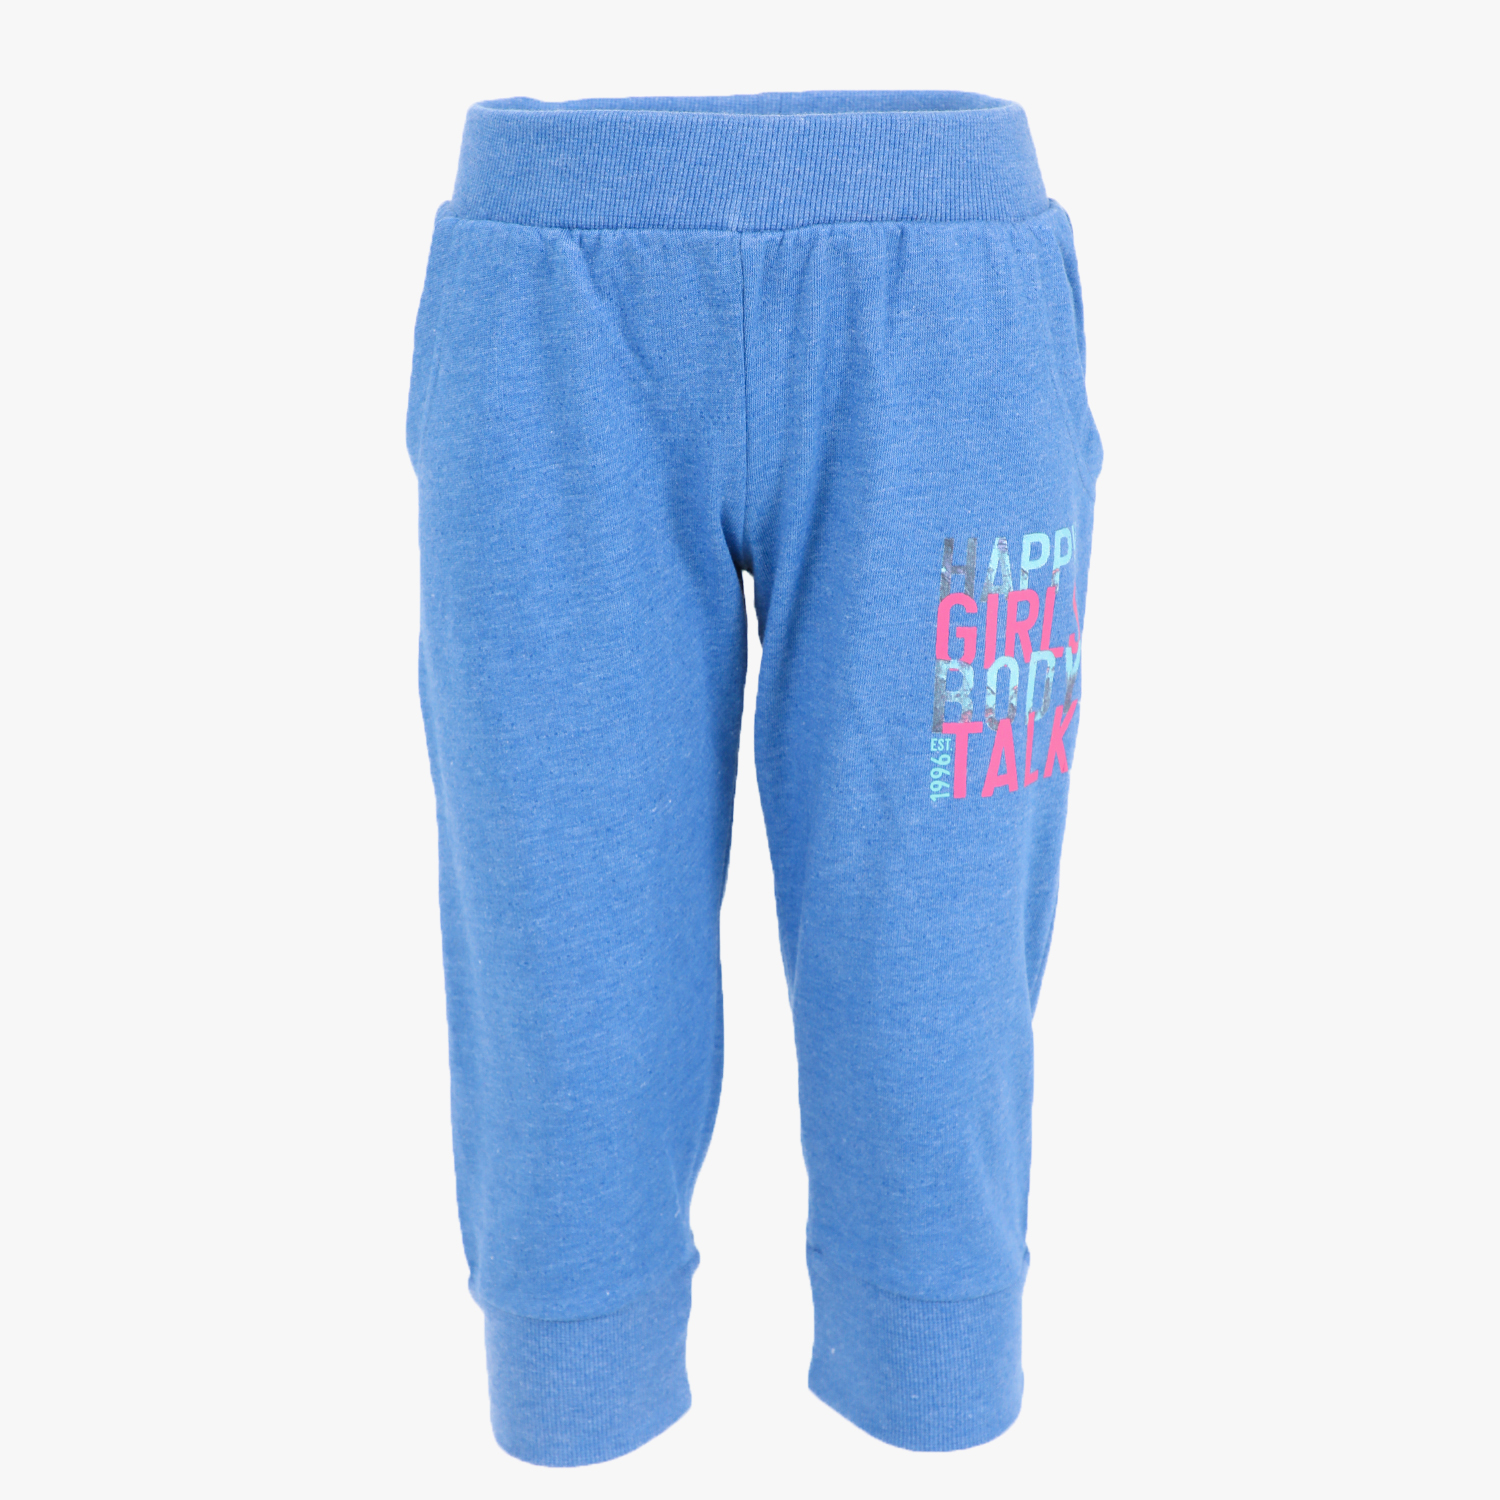 Παιδικά/Girls/Ρούχα/Παντελόνια BODYTALK - Παιδικό capri παντελόνι φόρμας BODYTALK HAPPYG μπλε